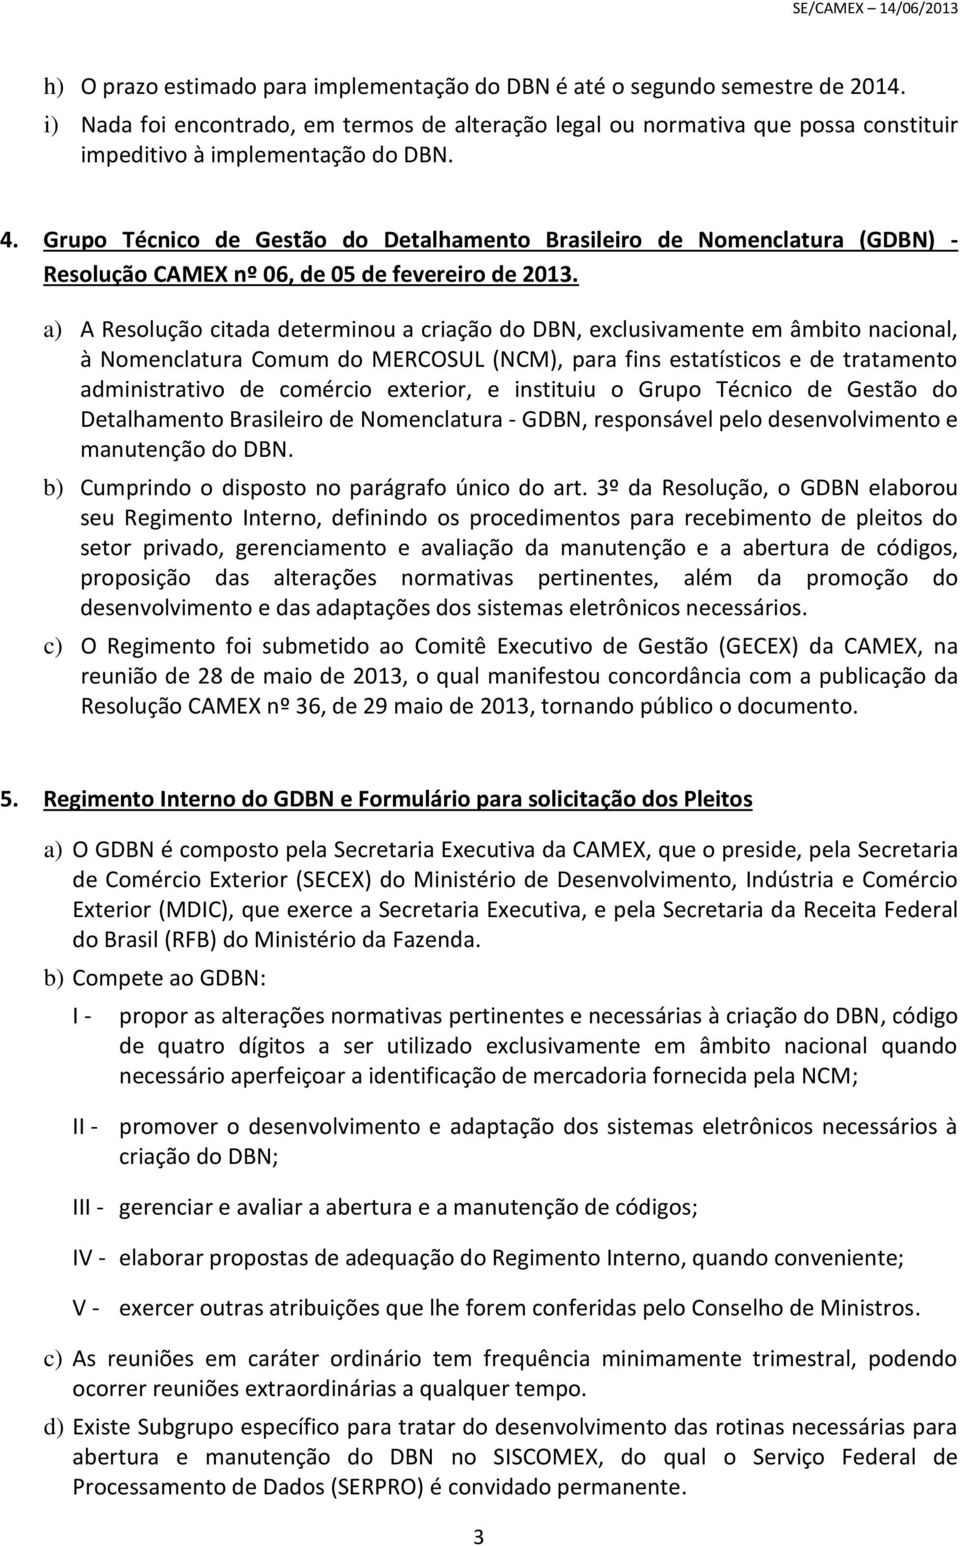 Grupo Técnico de Gestão do Detalhamento Brasileiro de Nomenclatura (GDBN) - Resolução CAMEX nº 06, de 05 de fevereiro de 2013.